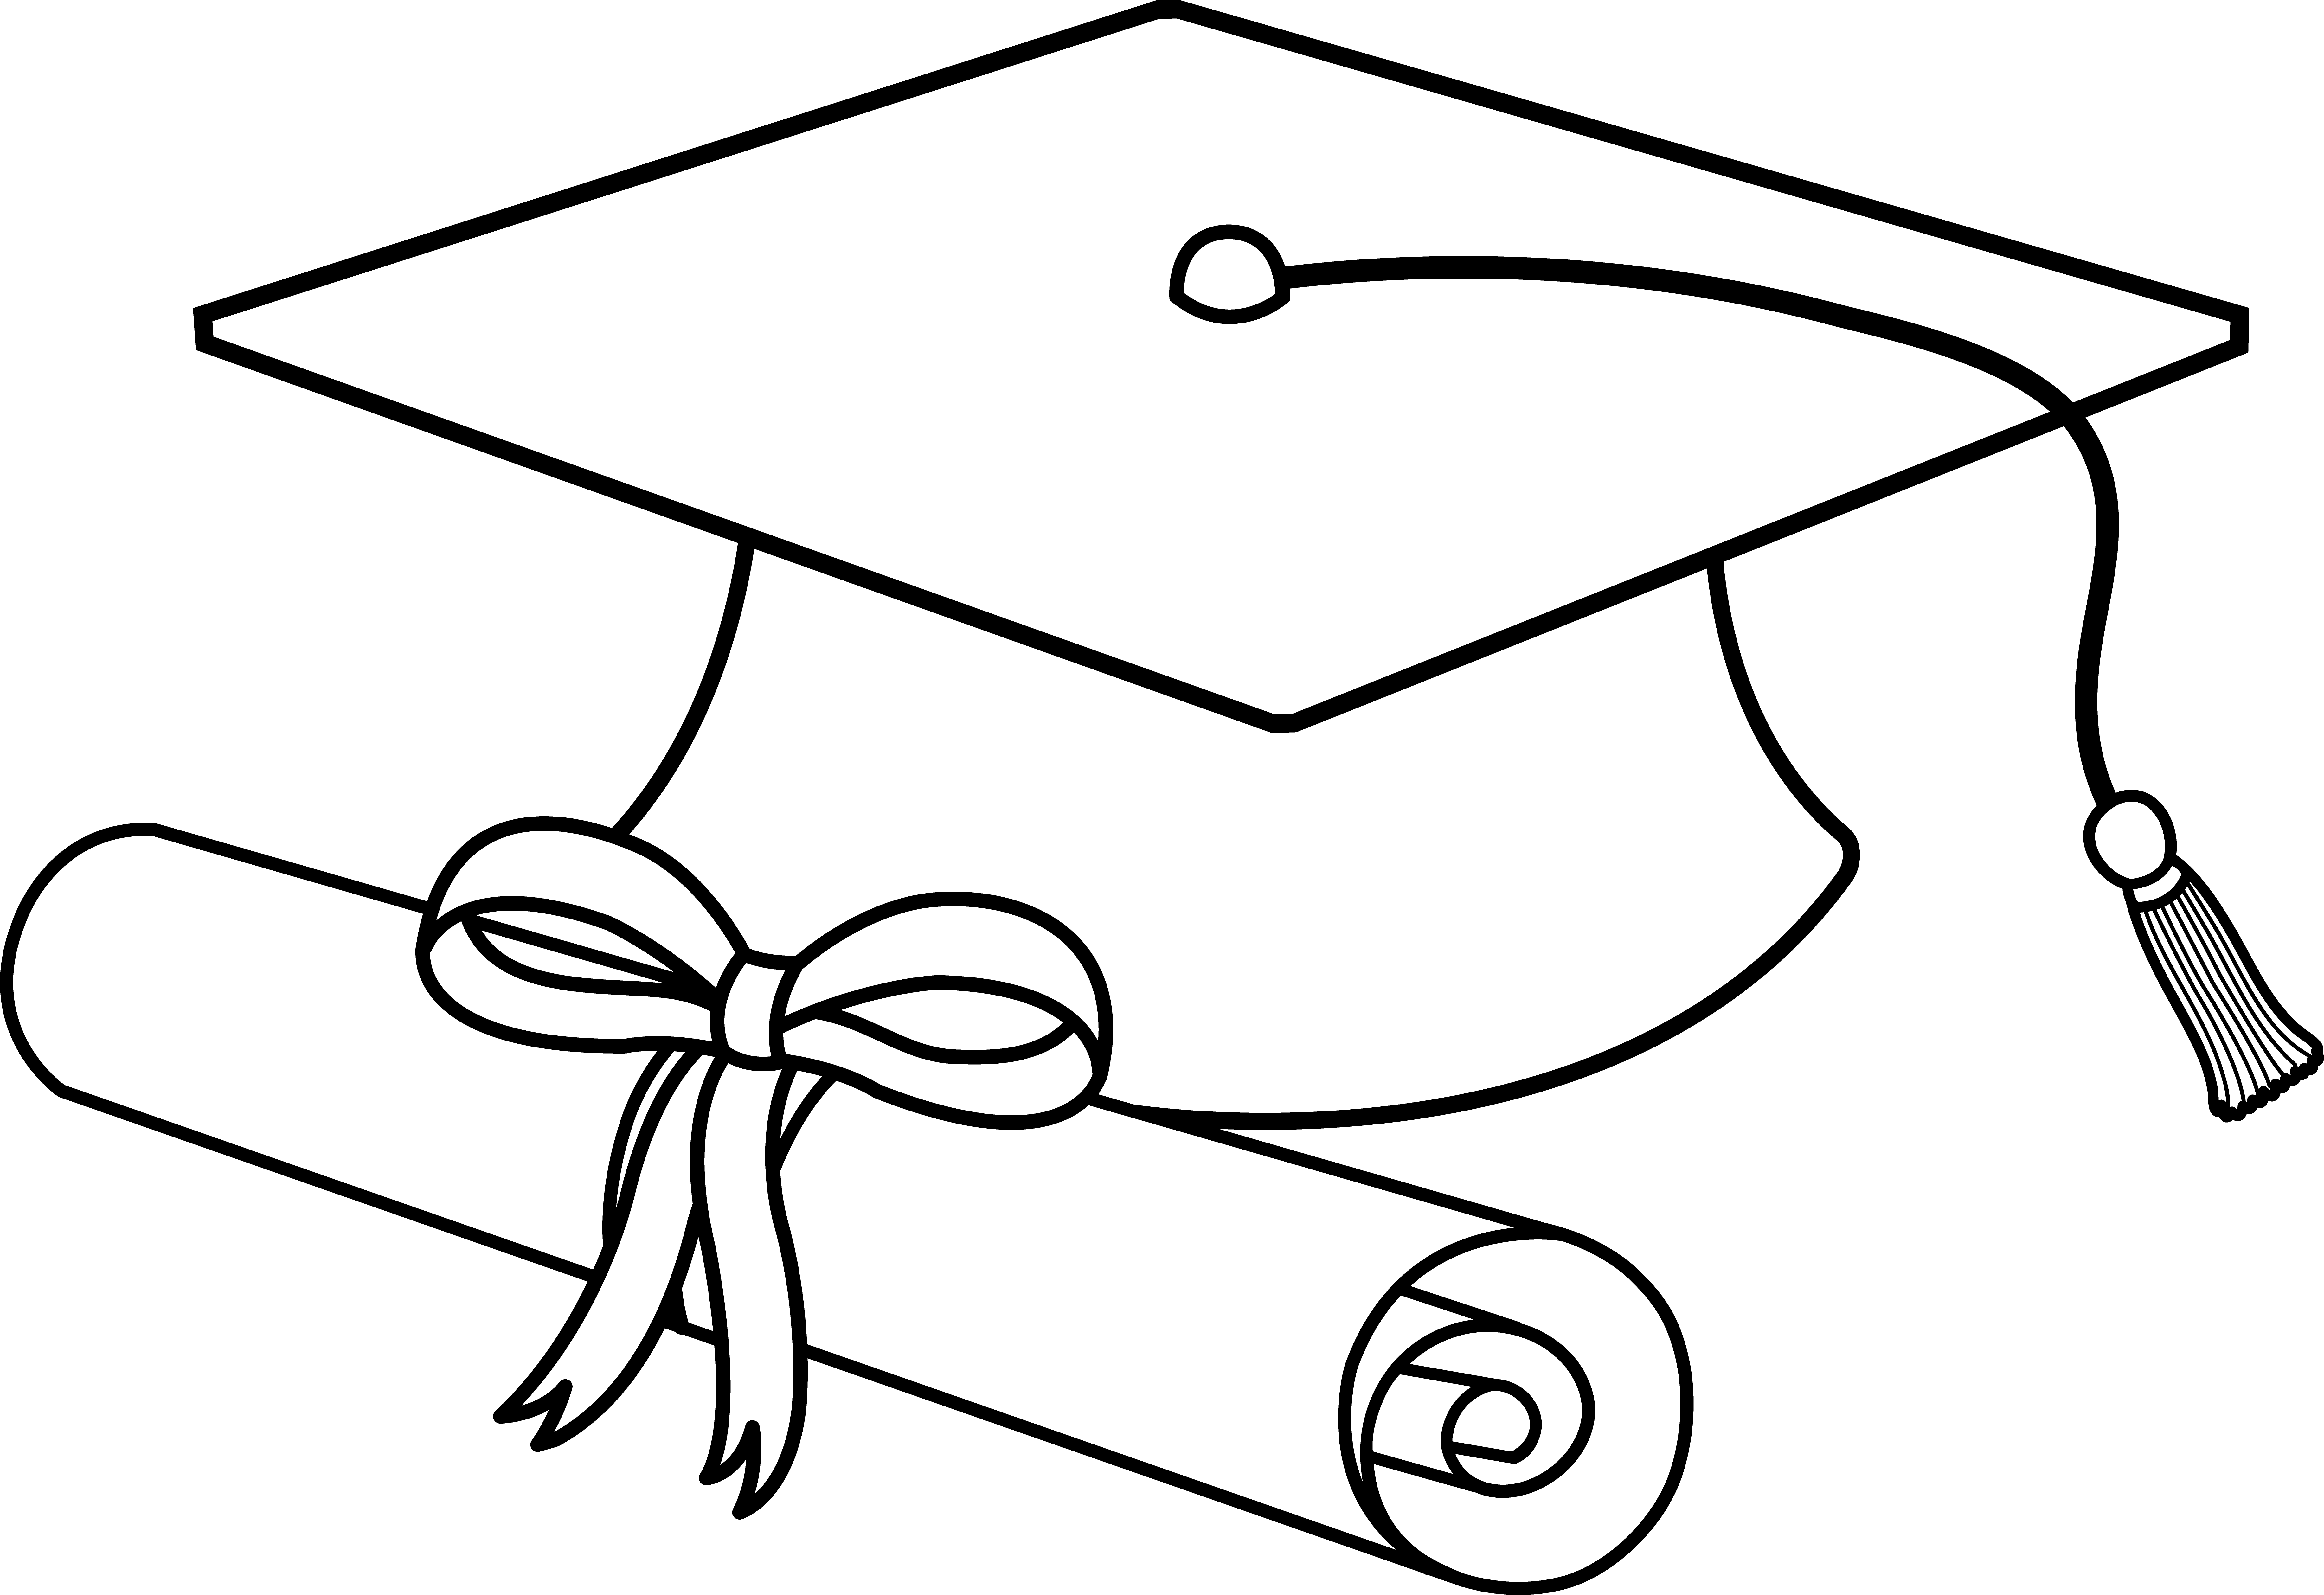 Flying Graduation Caps Clip Art | Graduation Cap Line Art - Free Clip Art | Stuff to Buy | Pinterest | Clip art, Graduation and Clip art free